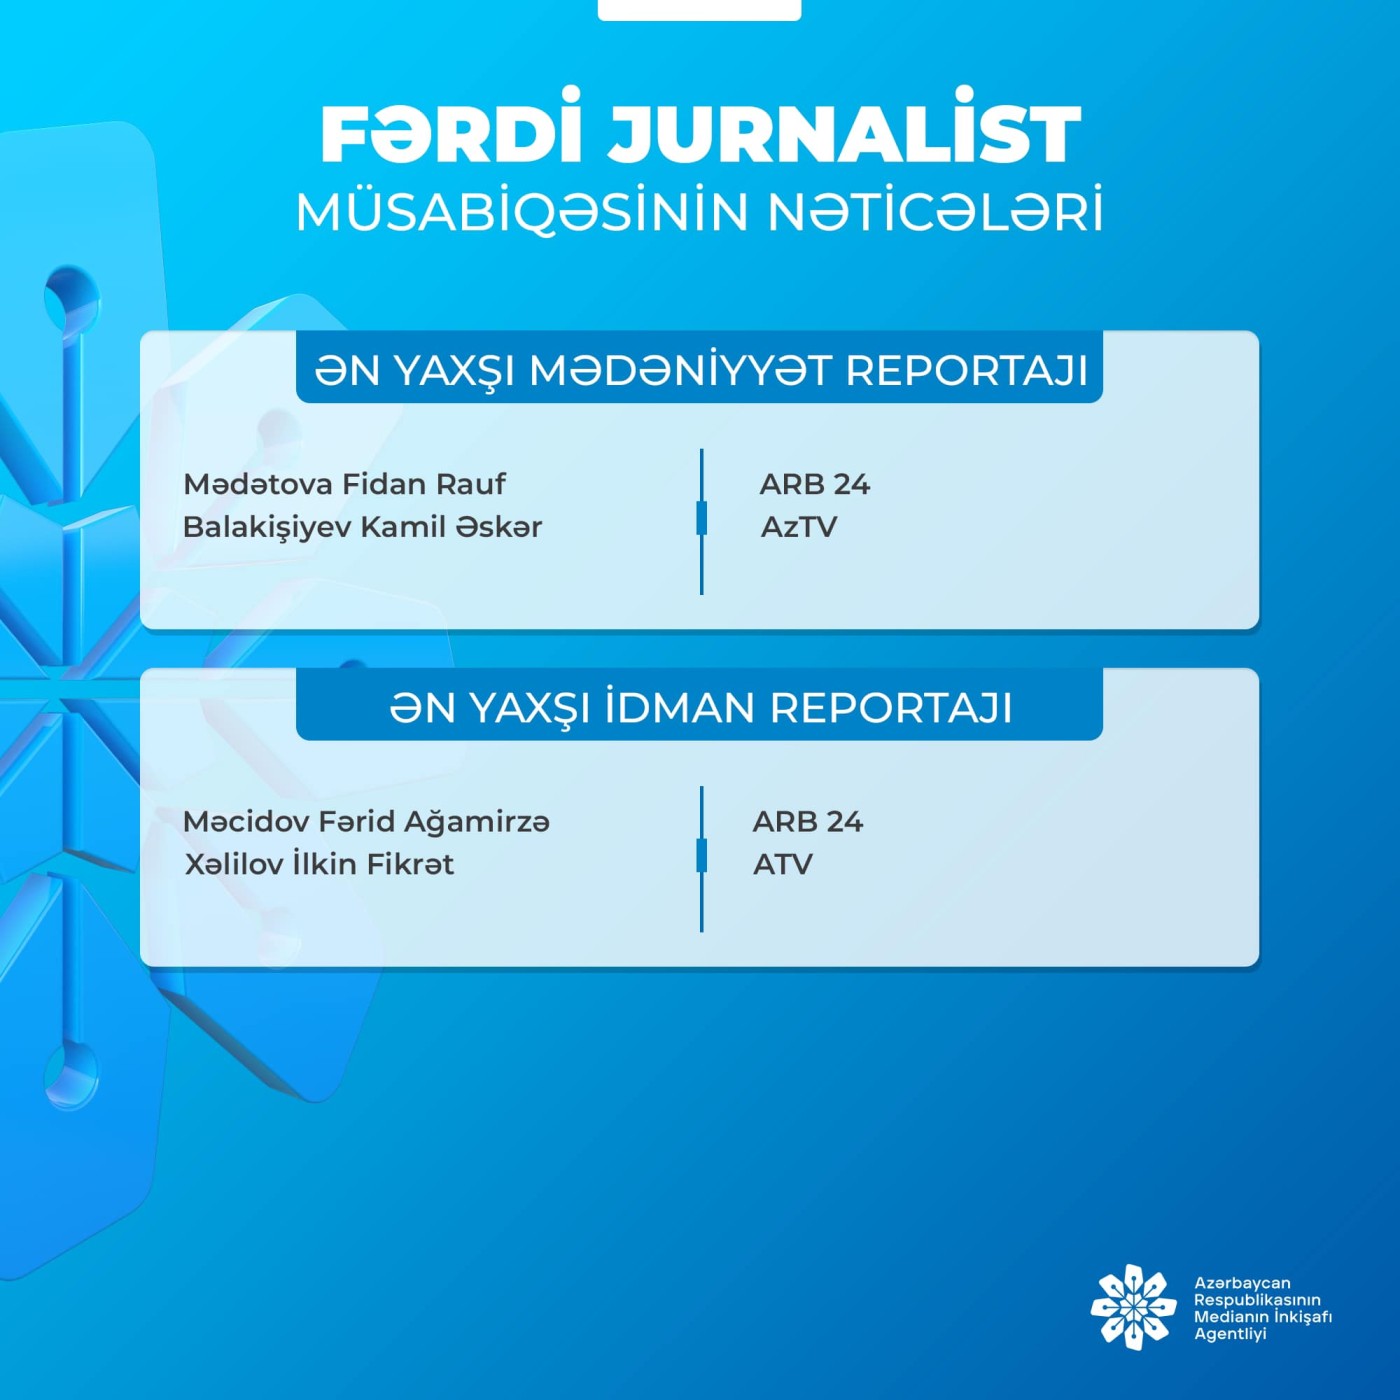 MEDİA “Fərdi jurnalist müsabiqəsi"nin nəticələrini açıqlayıb 